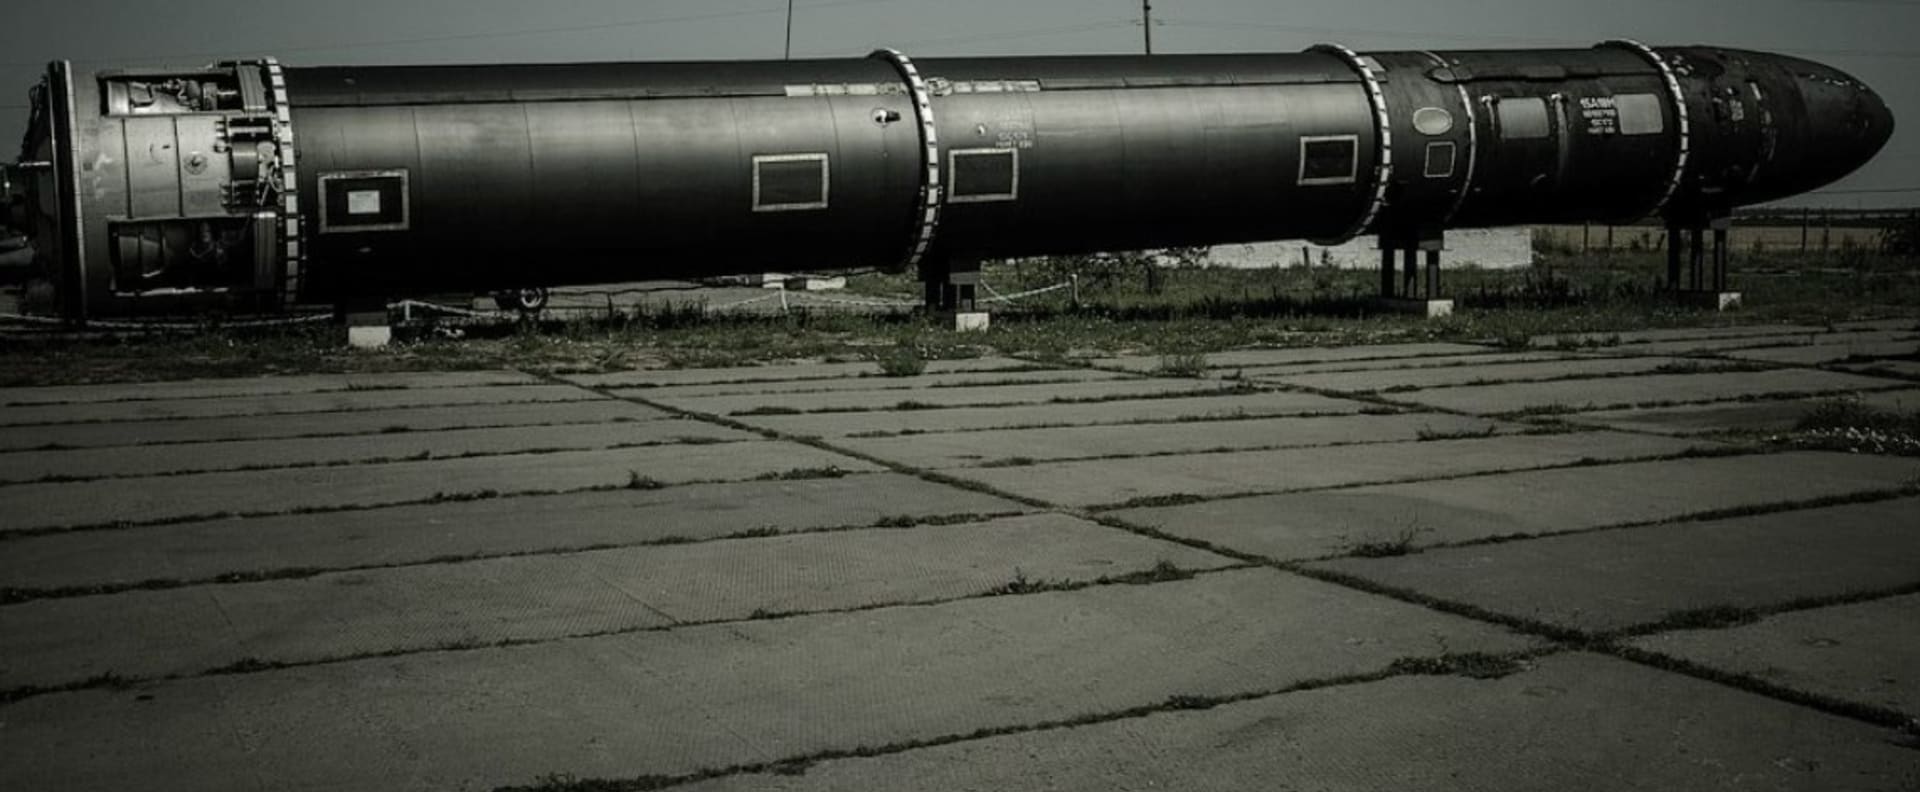 Původně sovětská základna jaderných zbraní v Pervomajsku na Ukrajině, dnes muzeum. Po roce 1991 byly rakety předány Rusku, které za tento krok slibovalo Ukrajině záruku územní celistvosti včetně Krymu.